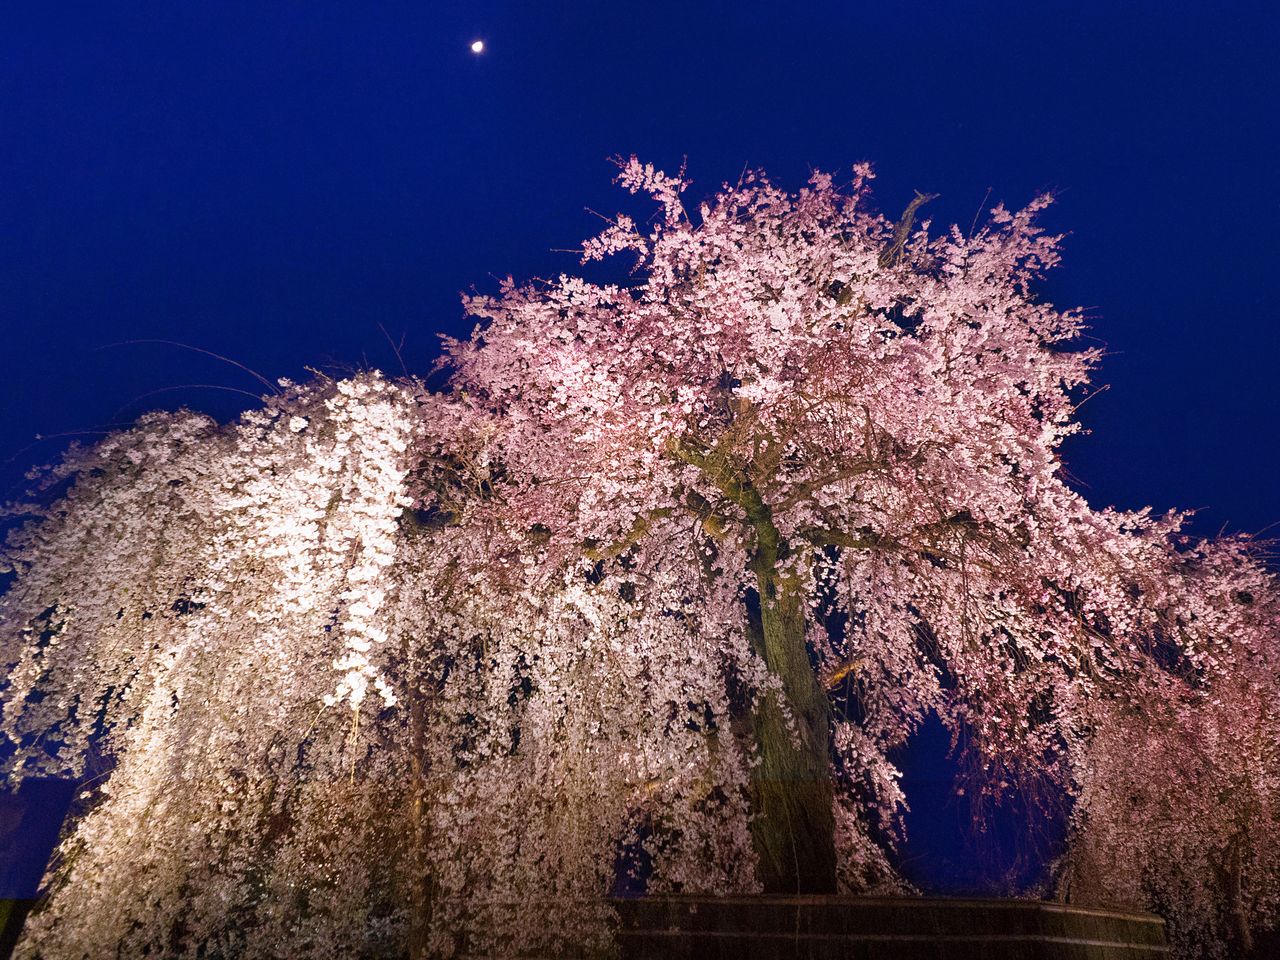 明かりに照らされた「祇園の夜桜」の華麗な姿